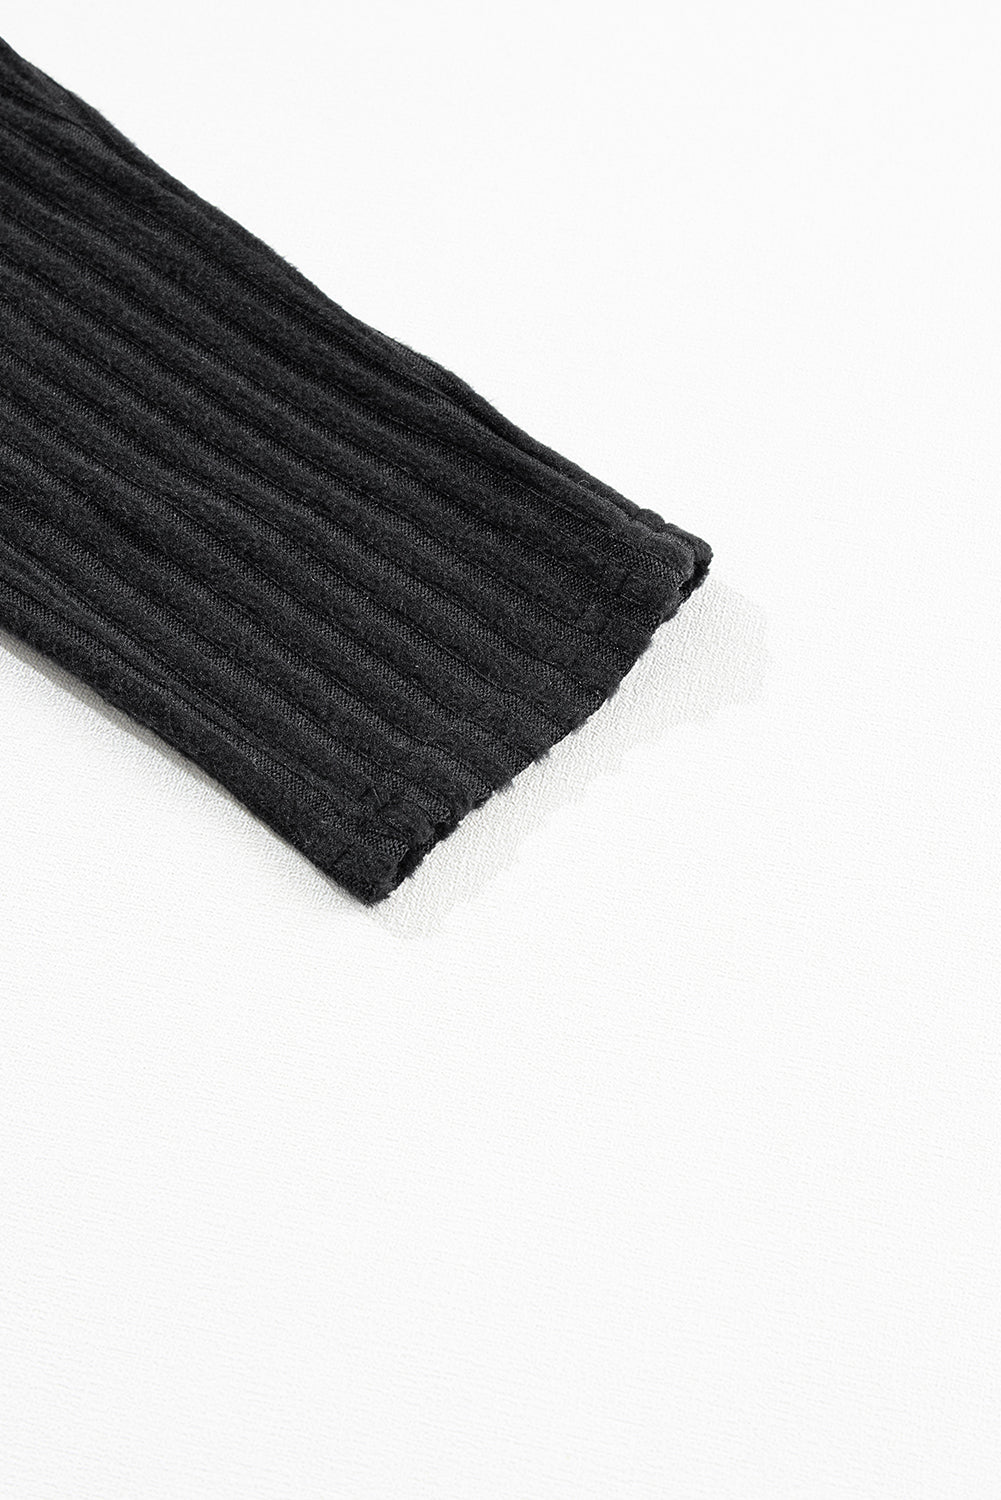 Crne rebraste teksturirane pletene tajice sa širokim pojasom